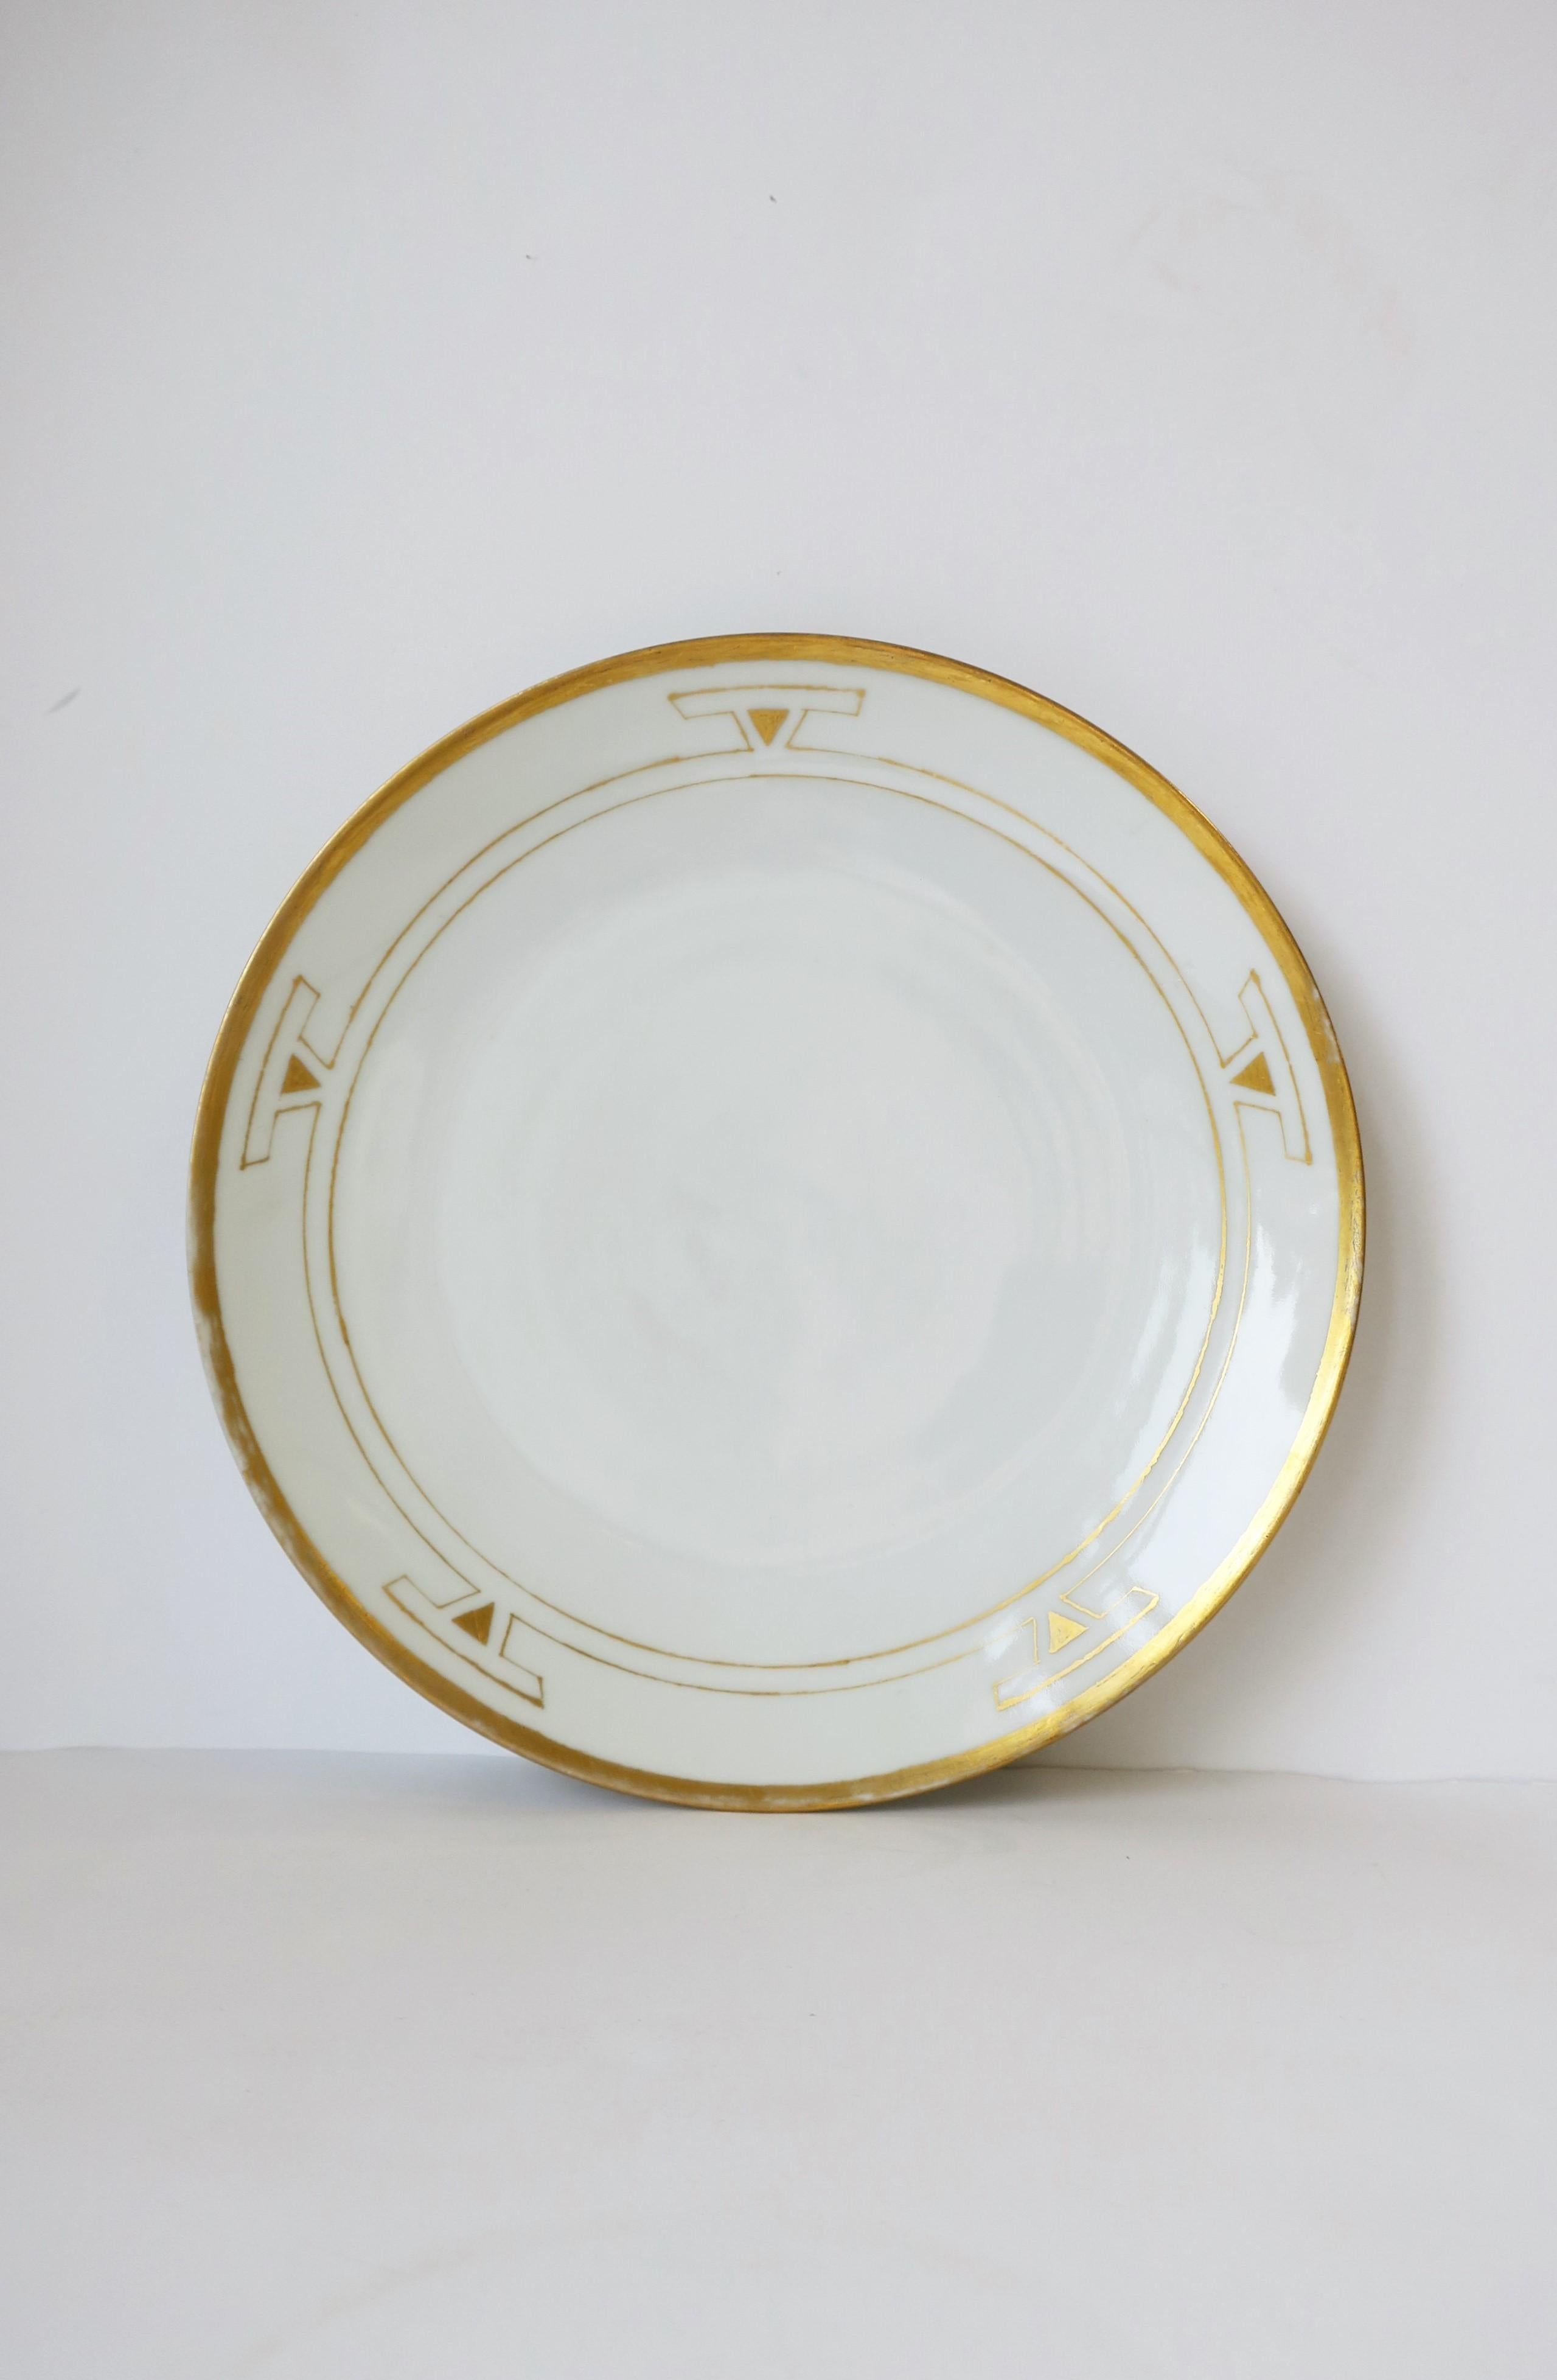 Magnifique assiette en porcelaine blanche et or d'époque Art déco allemande, signée par l'artiste pour la société Thomas Porcelain, 1929, Allemagne. Daté à la main, 